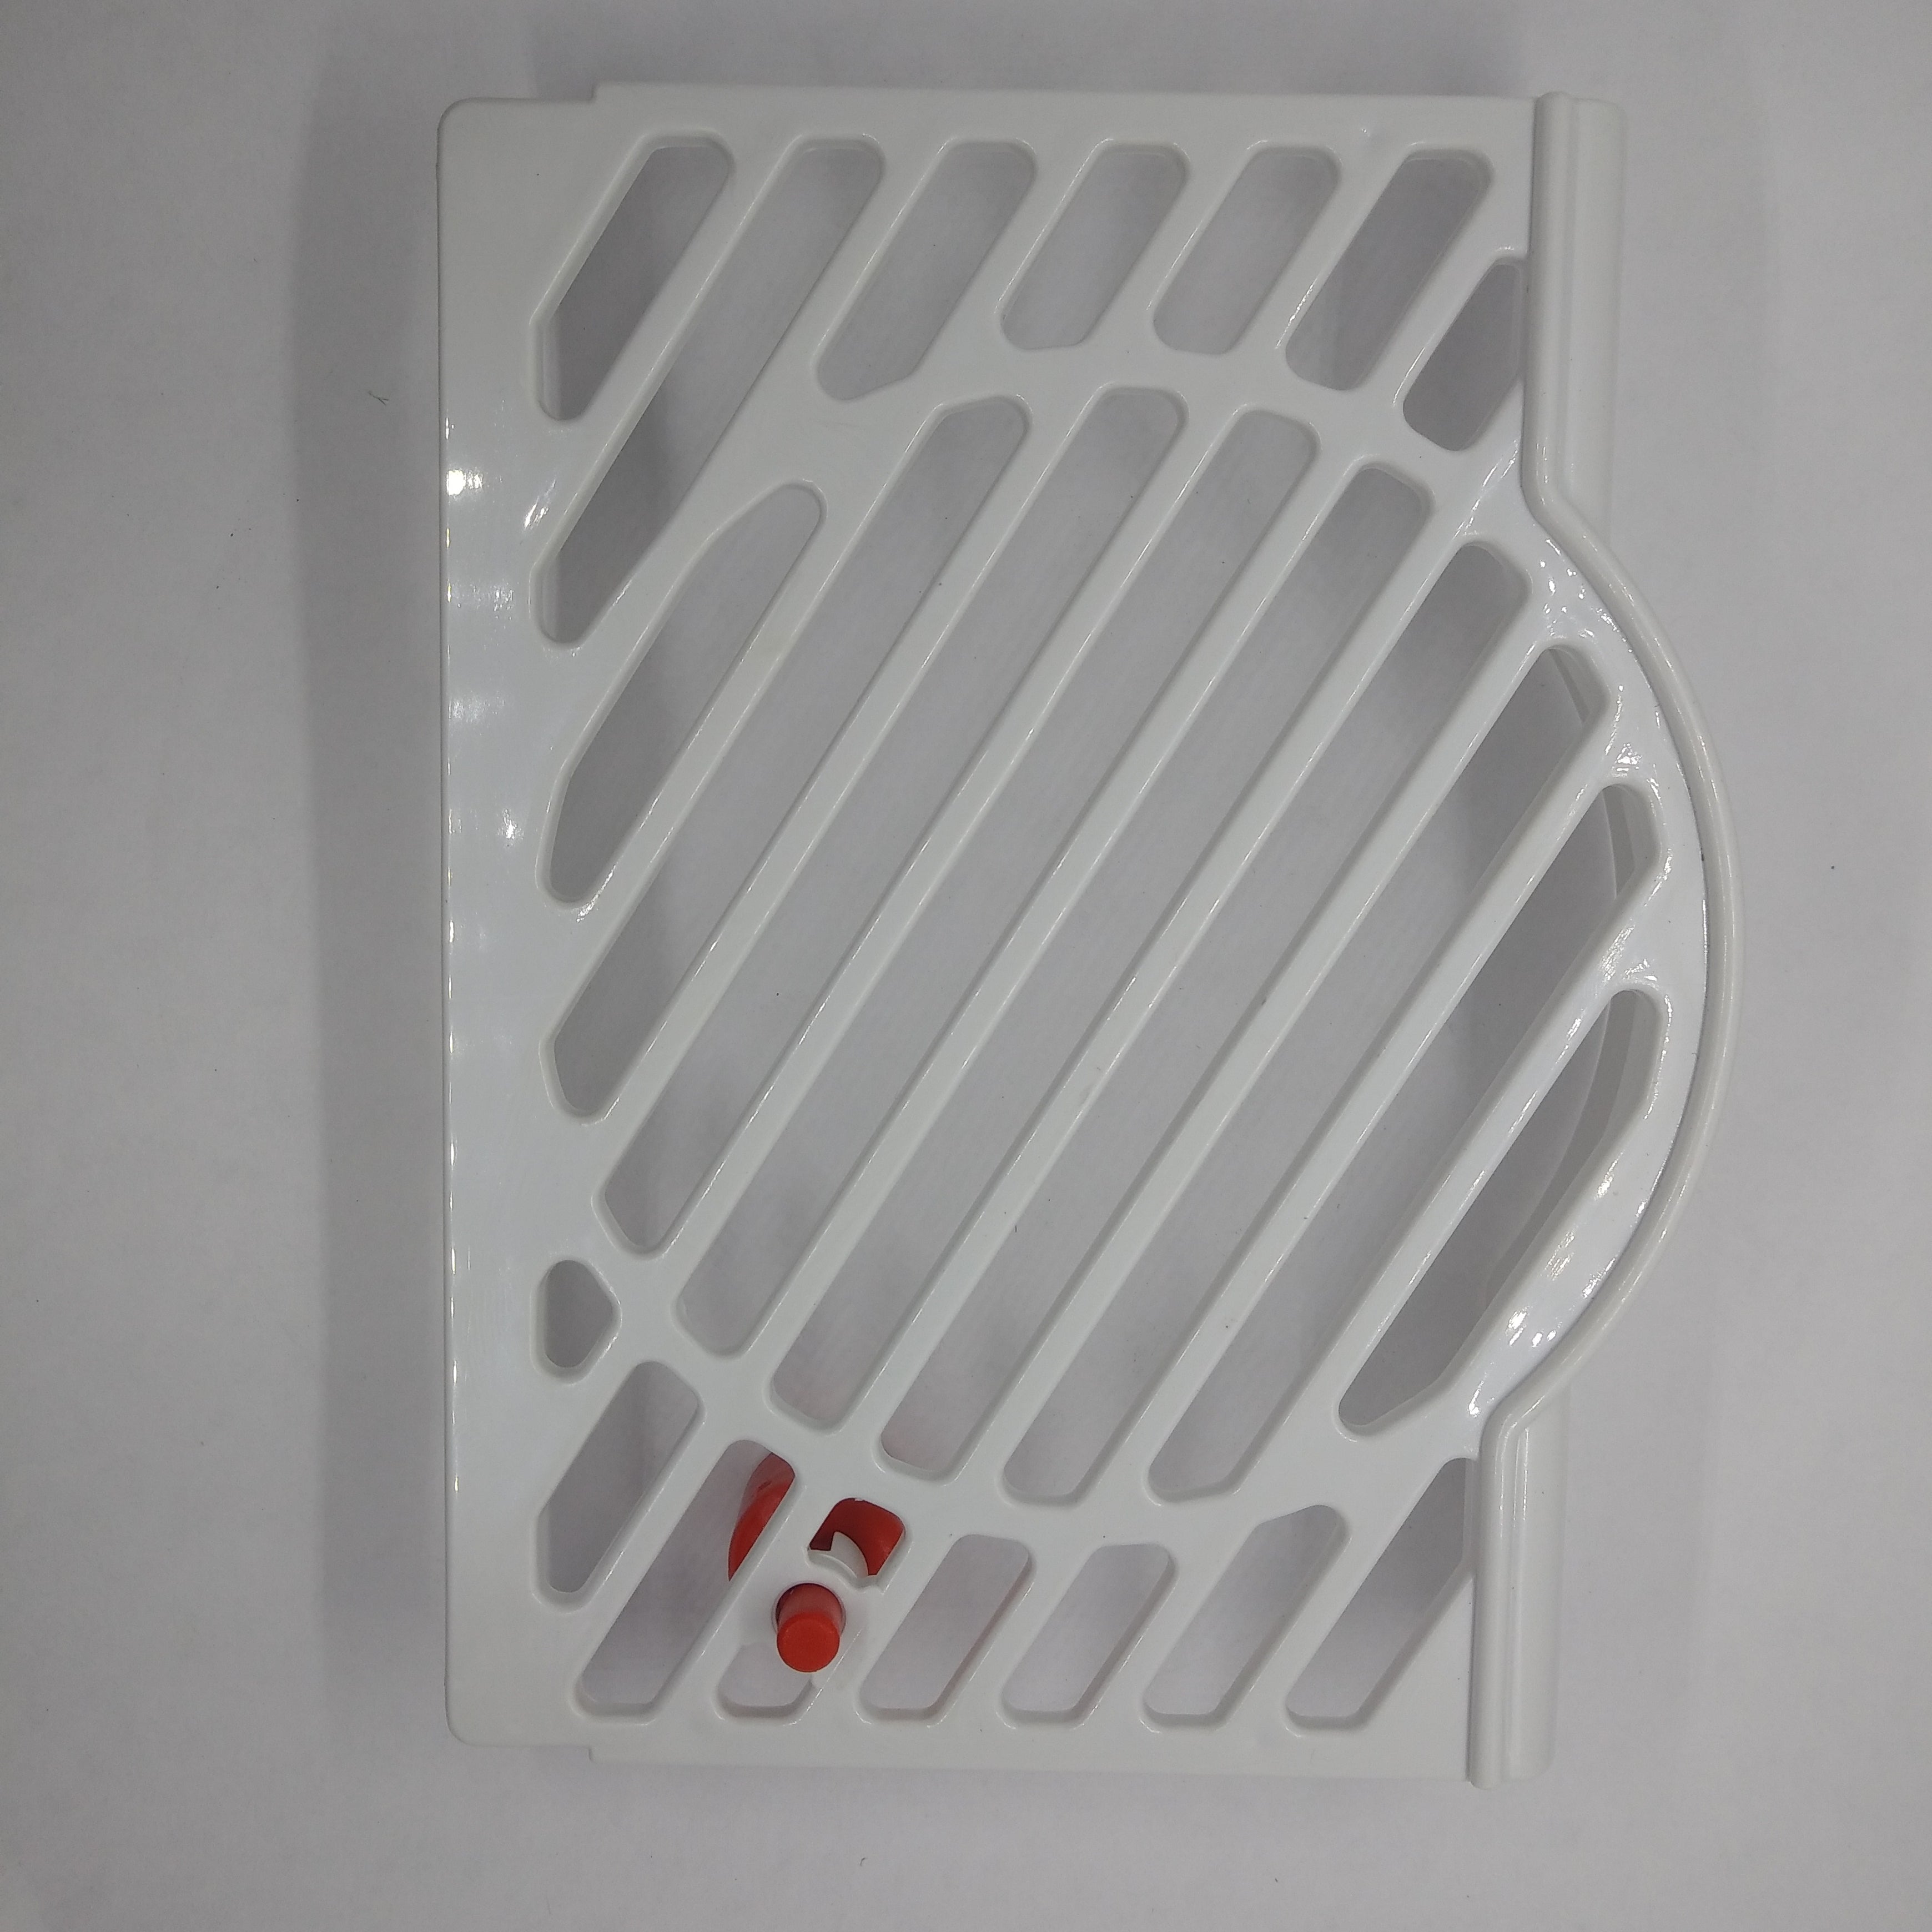 RBRA005  Bras White Drip Tray Cover. 22800-00560